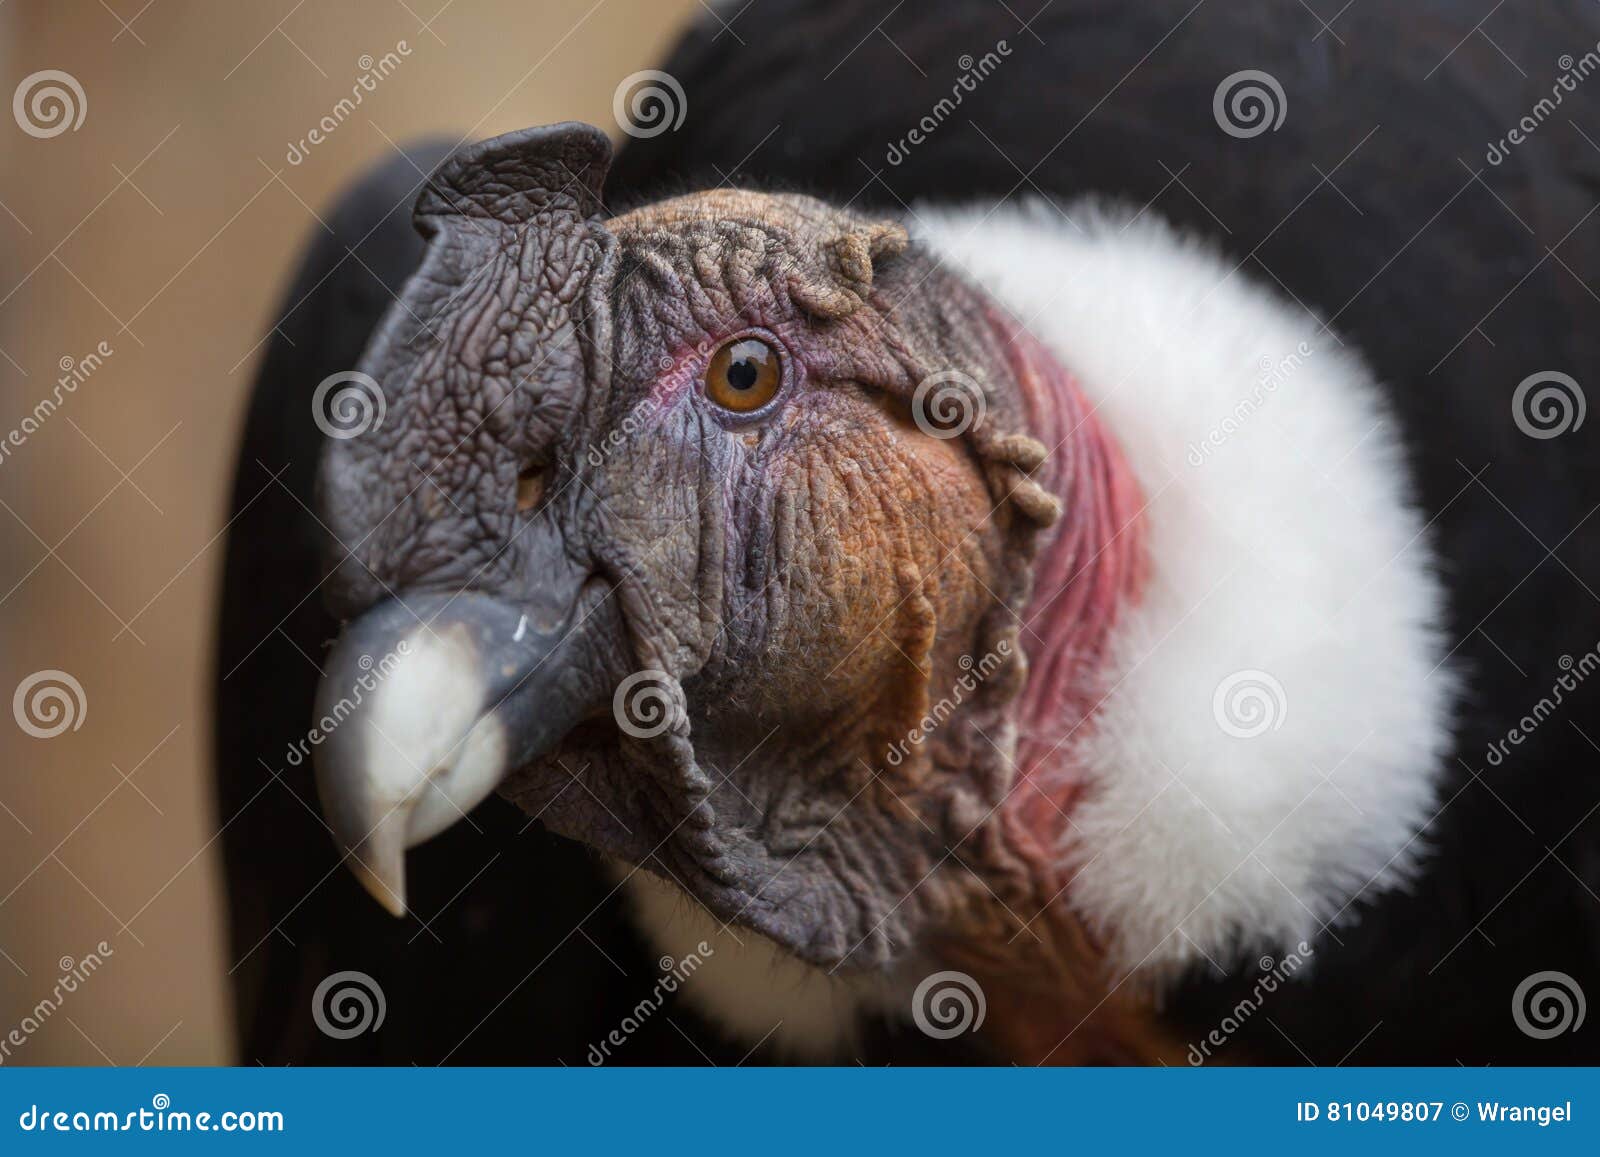 andean condor vultur gryphus.